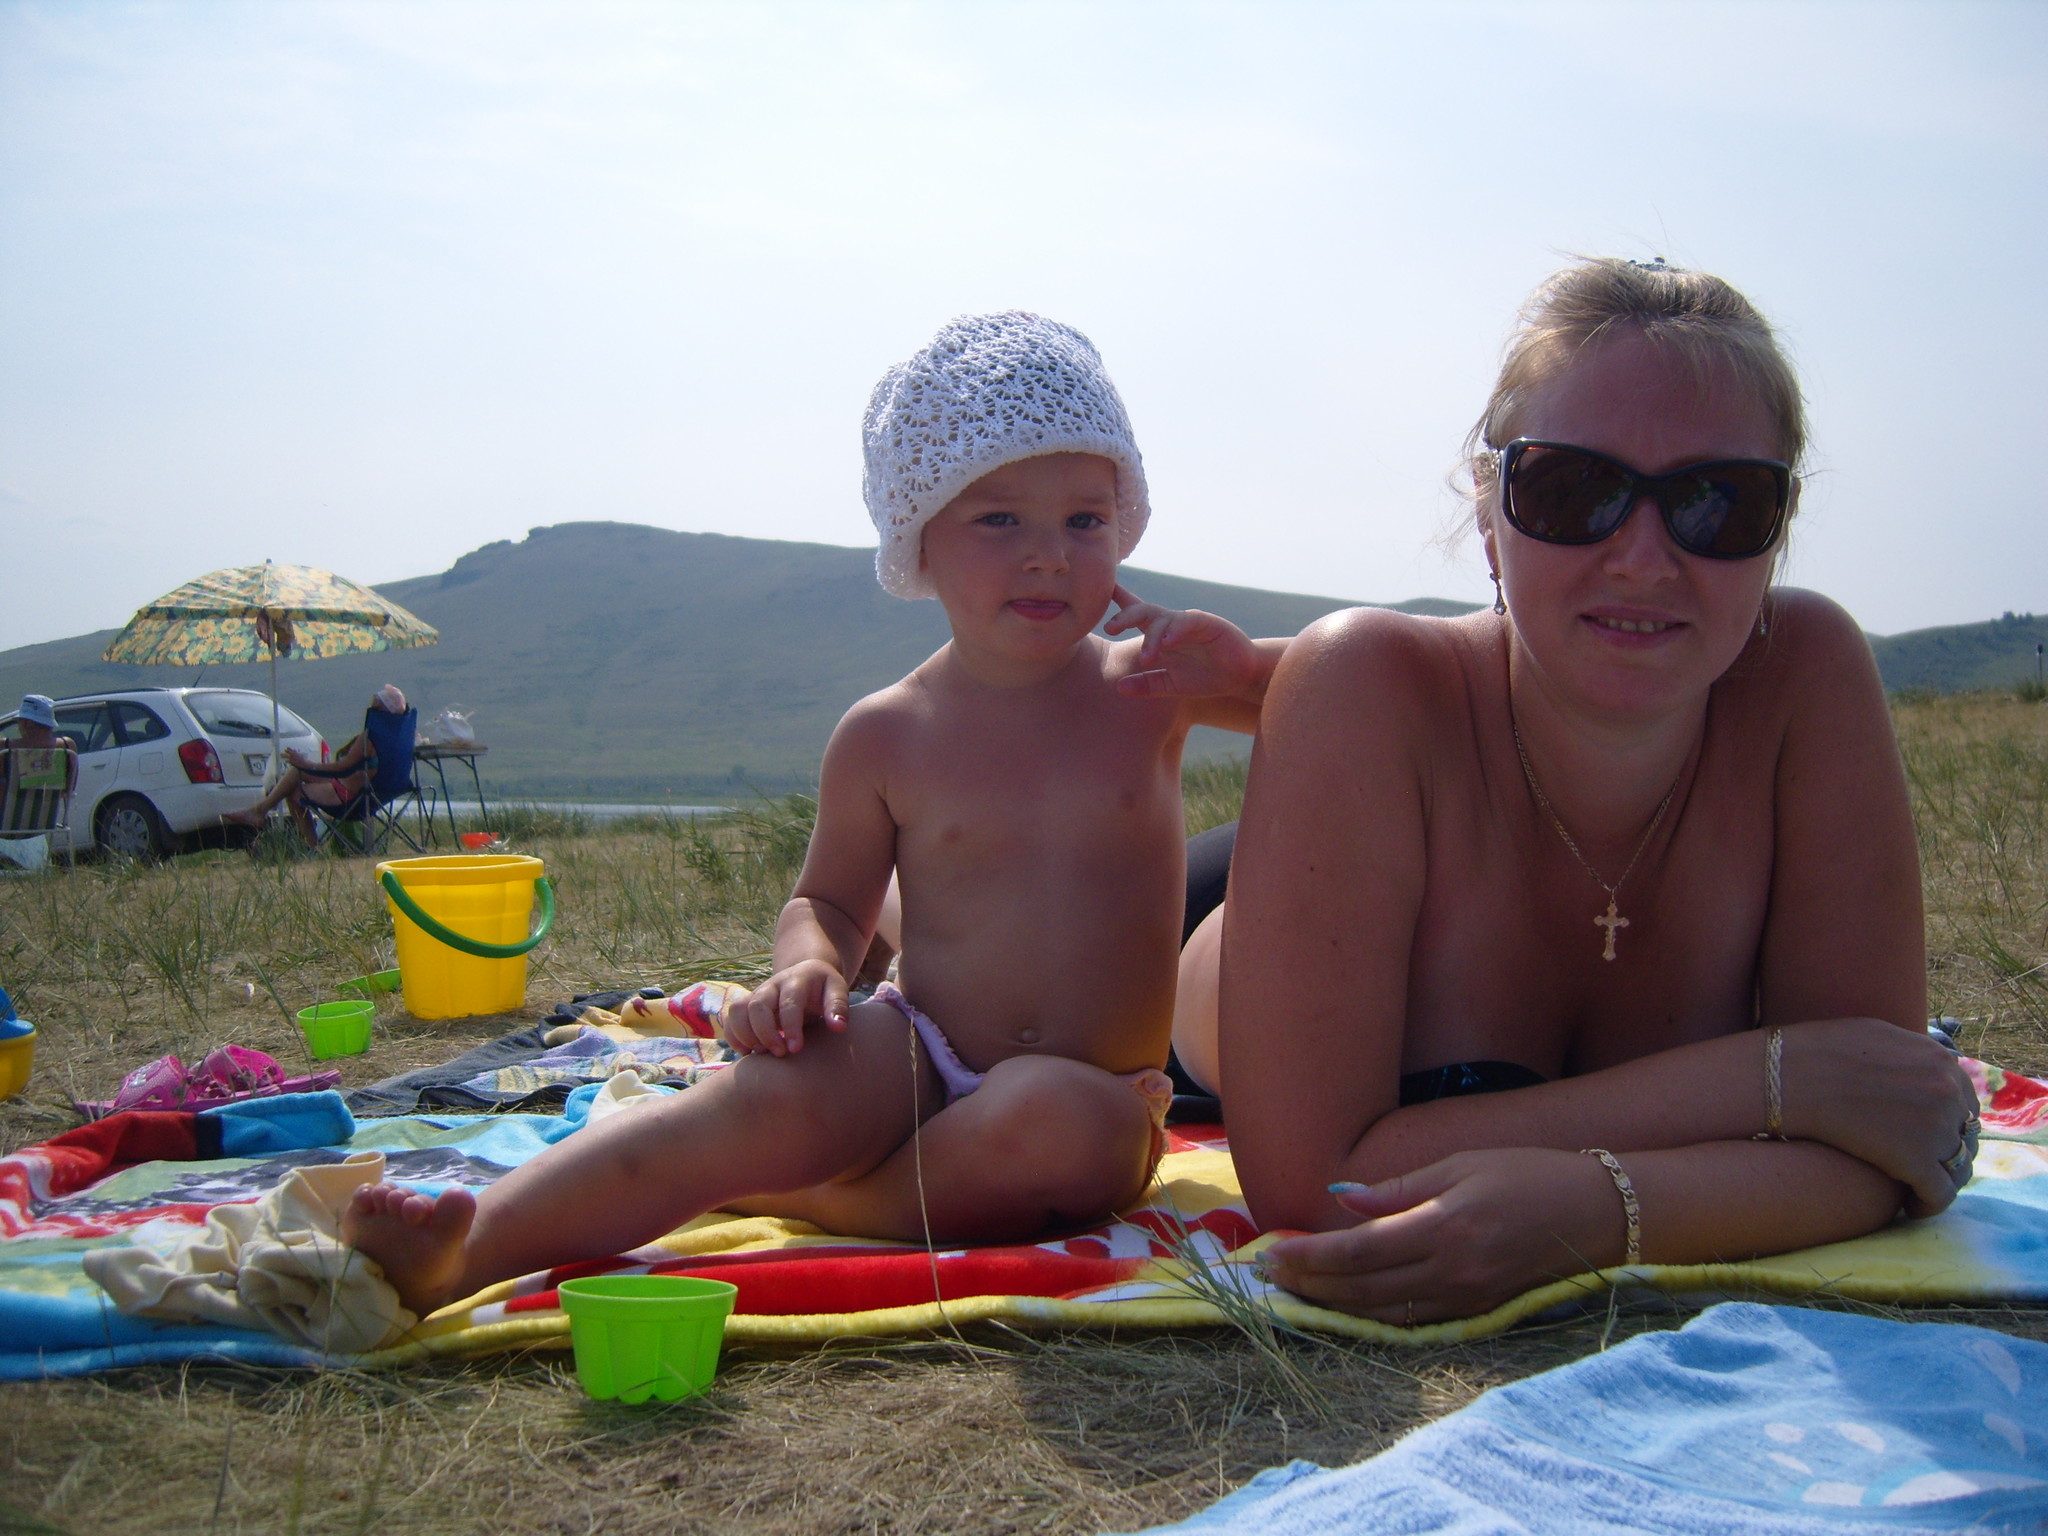 Мама с дочкой на нудистском пляже фото